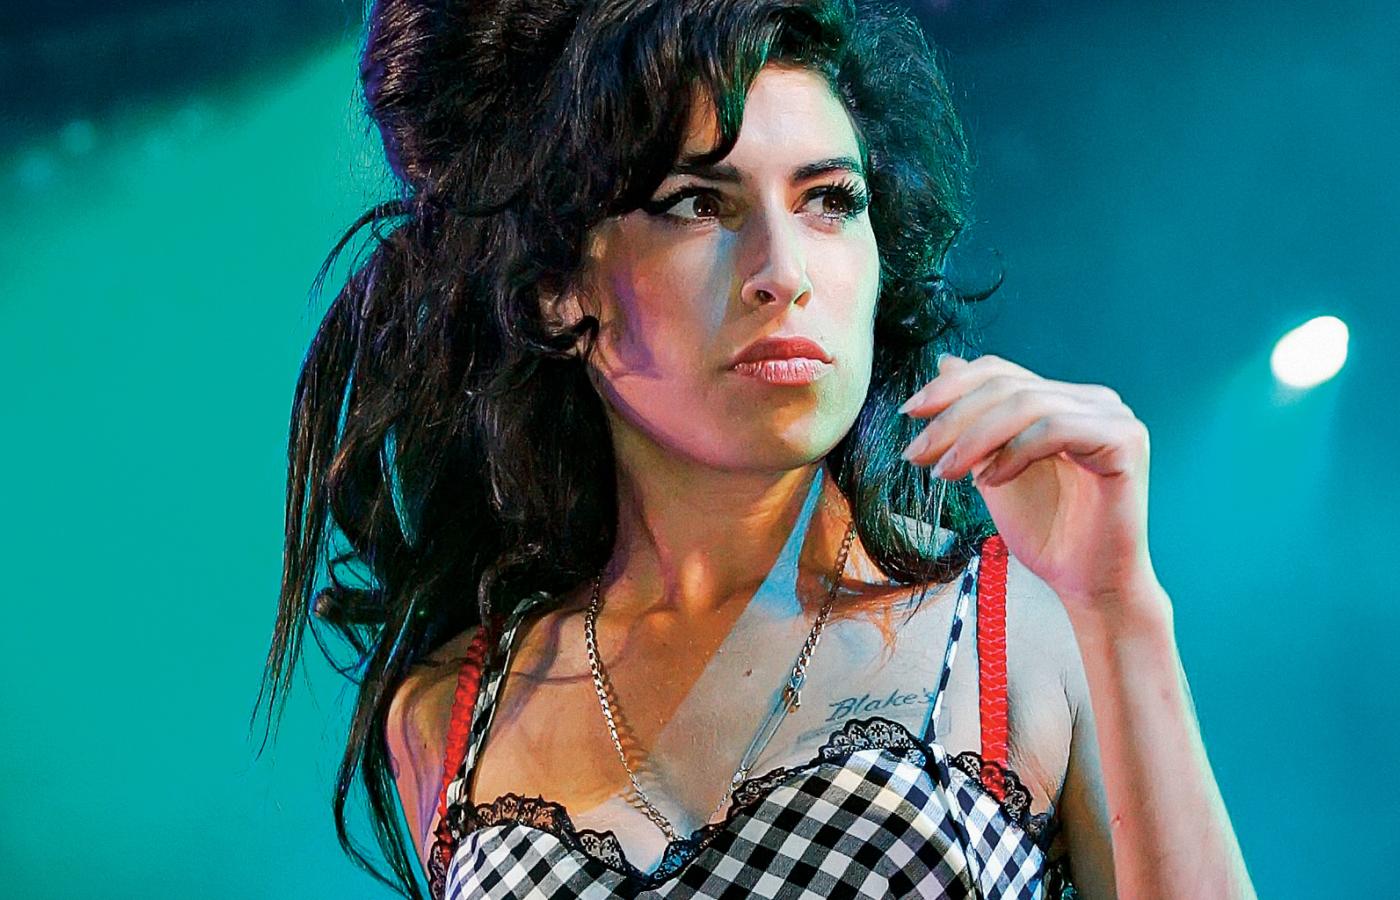 W każdym elemencie swojej muzyki i wizerunku Amy Winehouse wydawała się niedzisiejsza